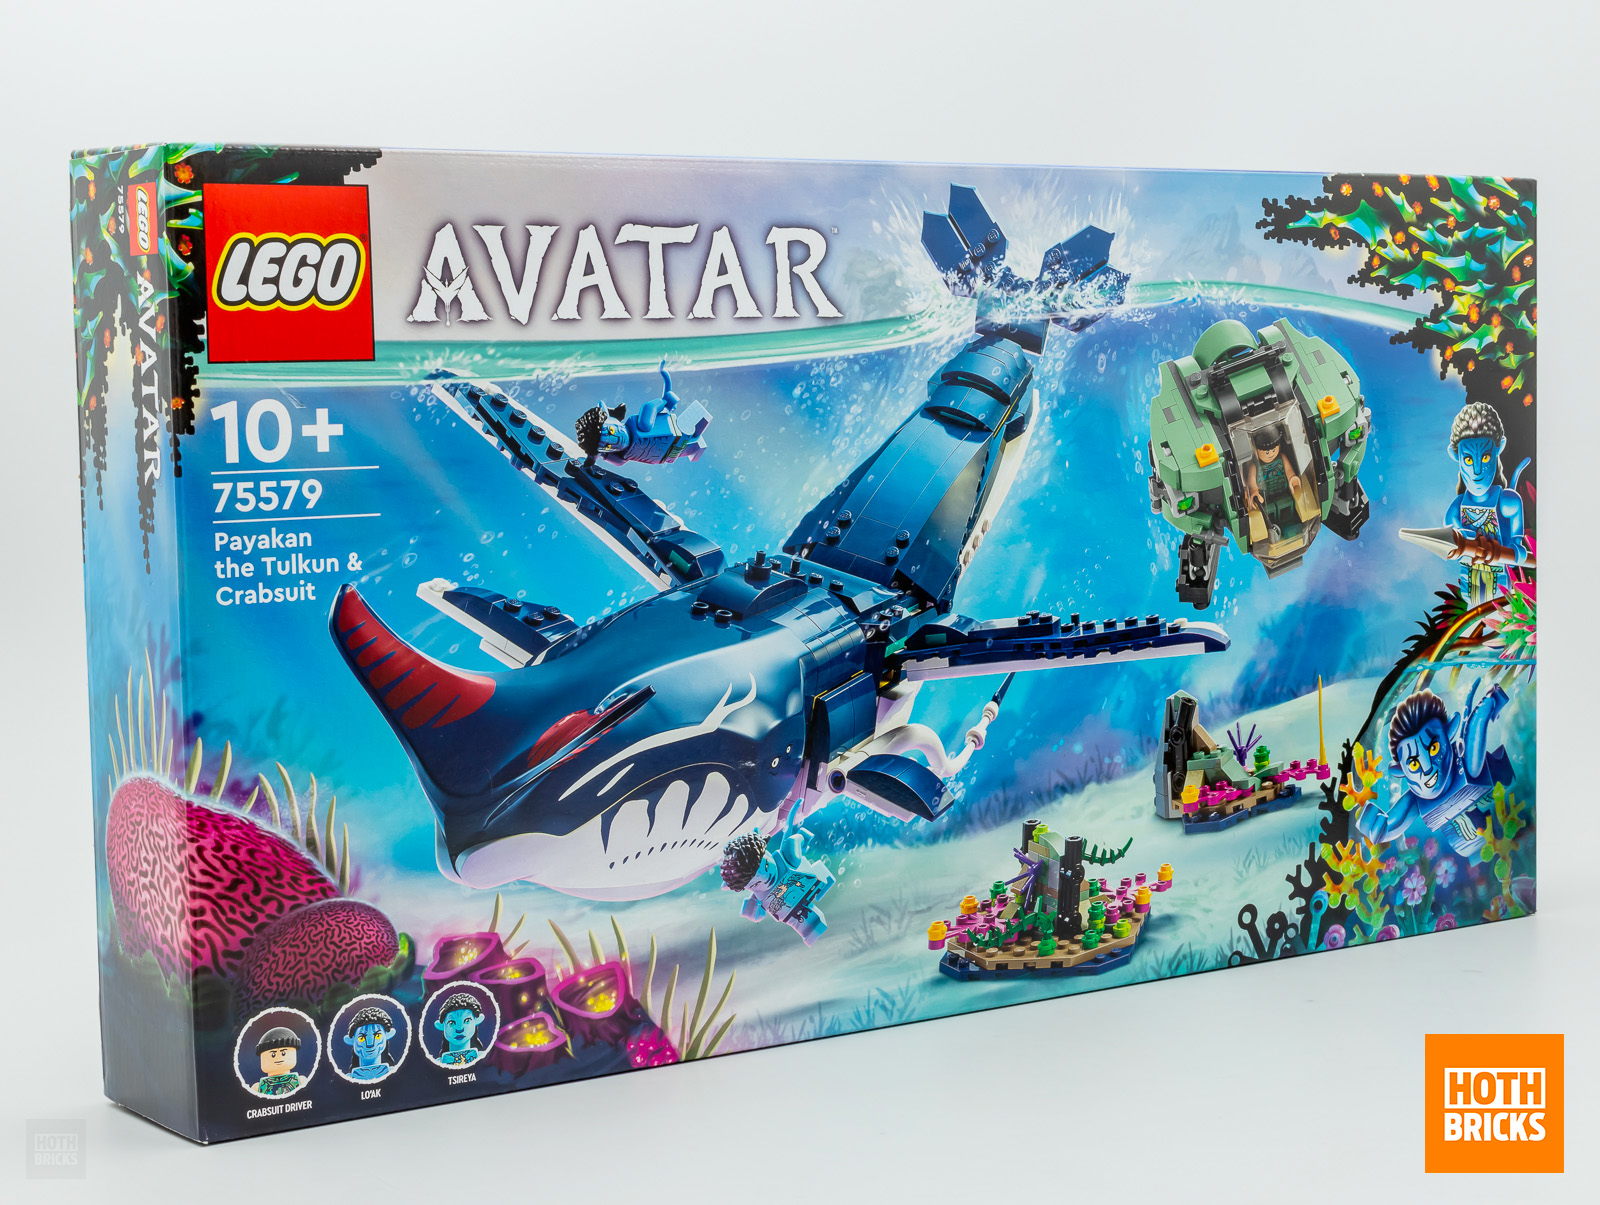 콘테스트: LEGO Avatar 75579 Payakan The Tulkun & Crabsuit 세트가 우승할 예정입니다!